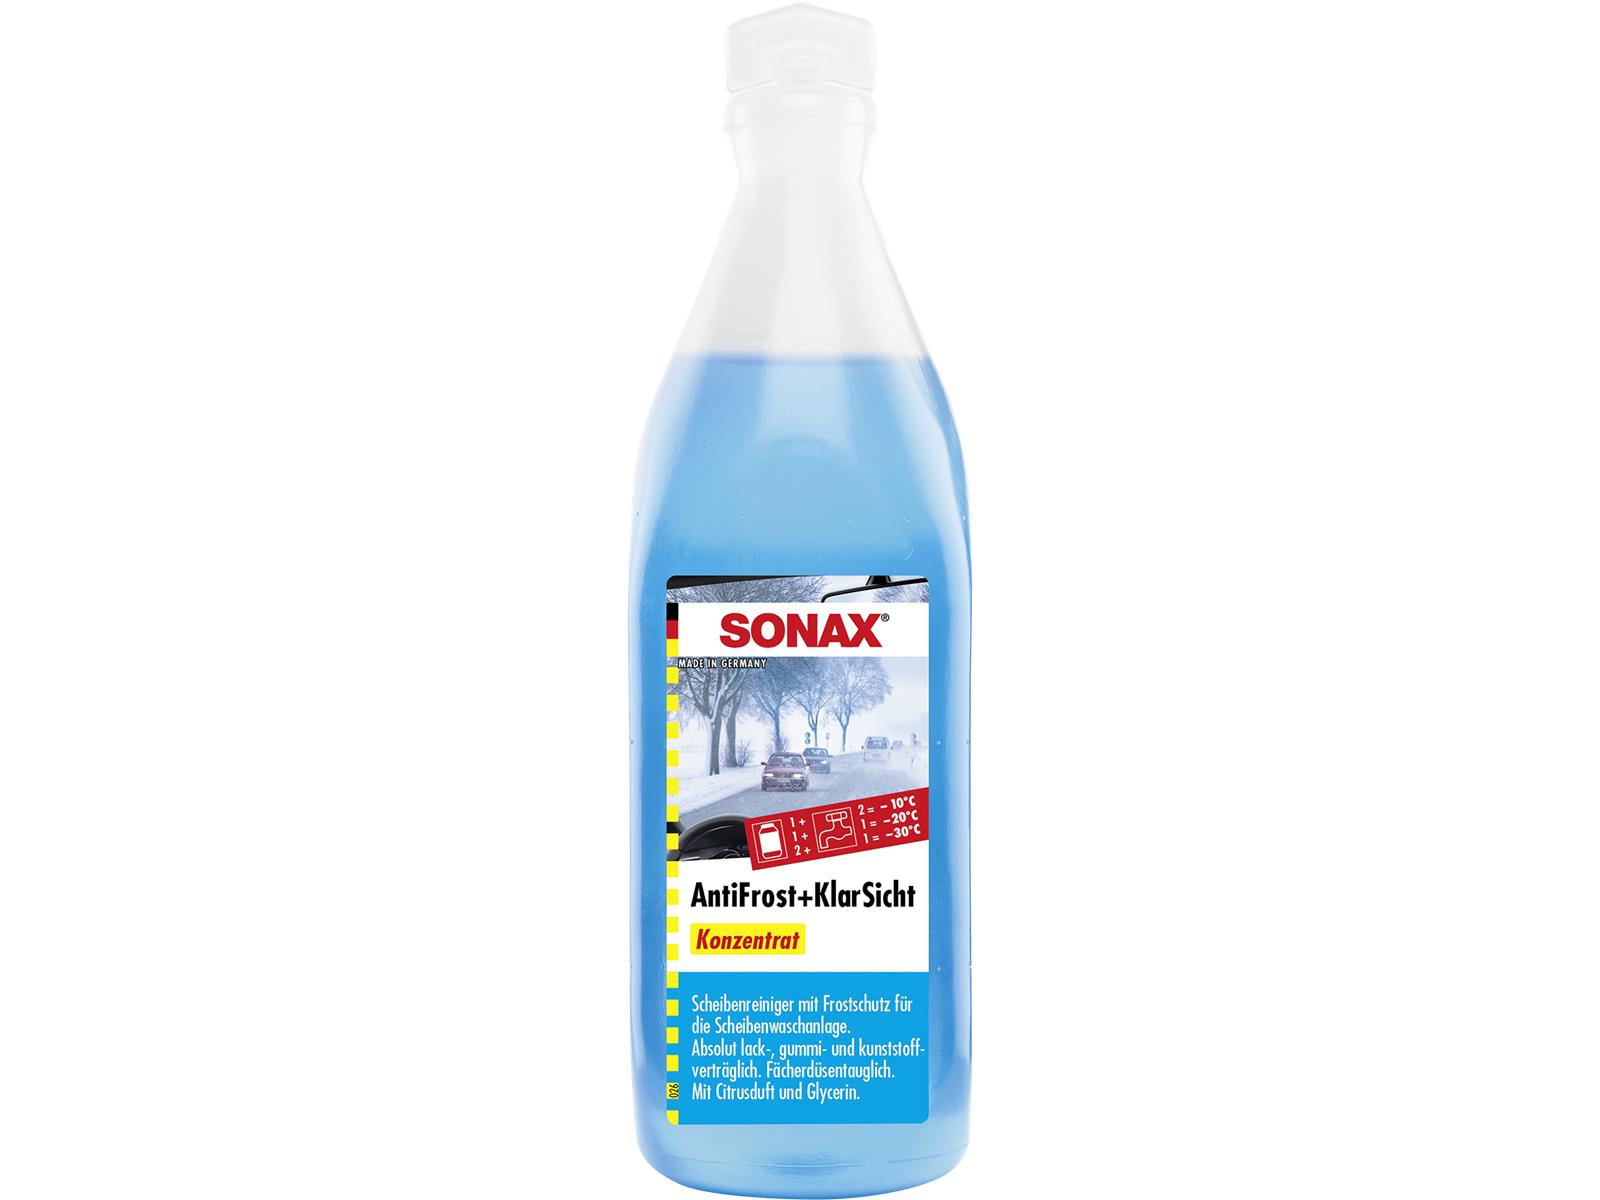 SONAX 03321000 AntiFrost+KlarSicht Konzentrat 250 ml